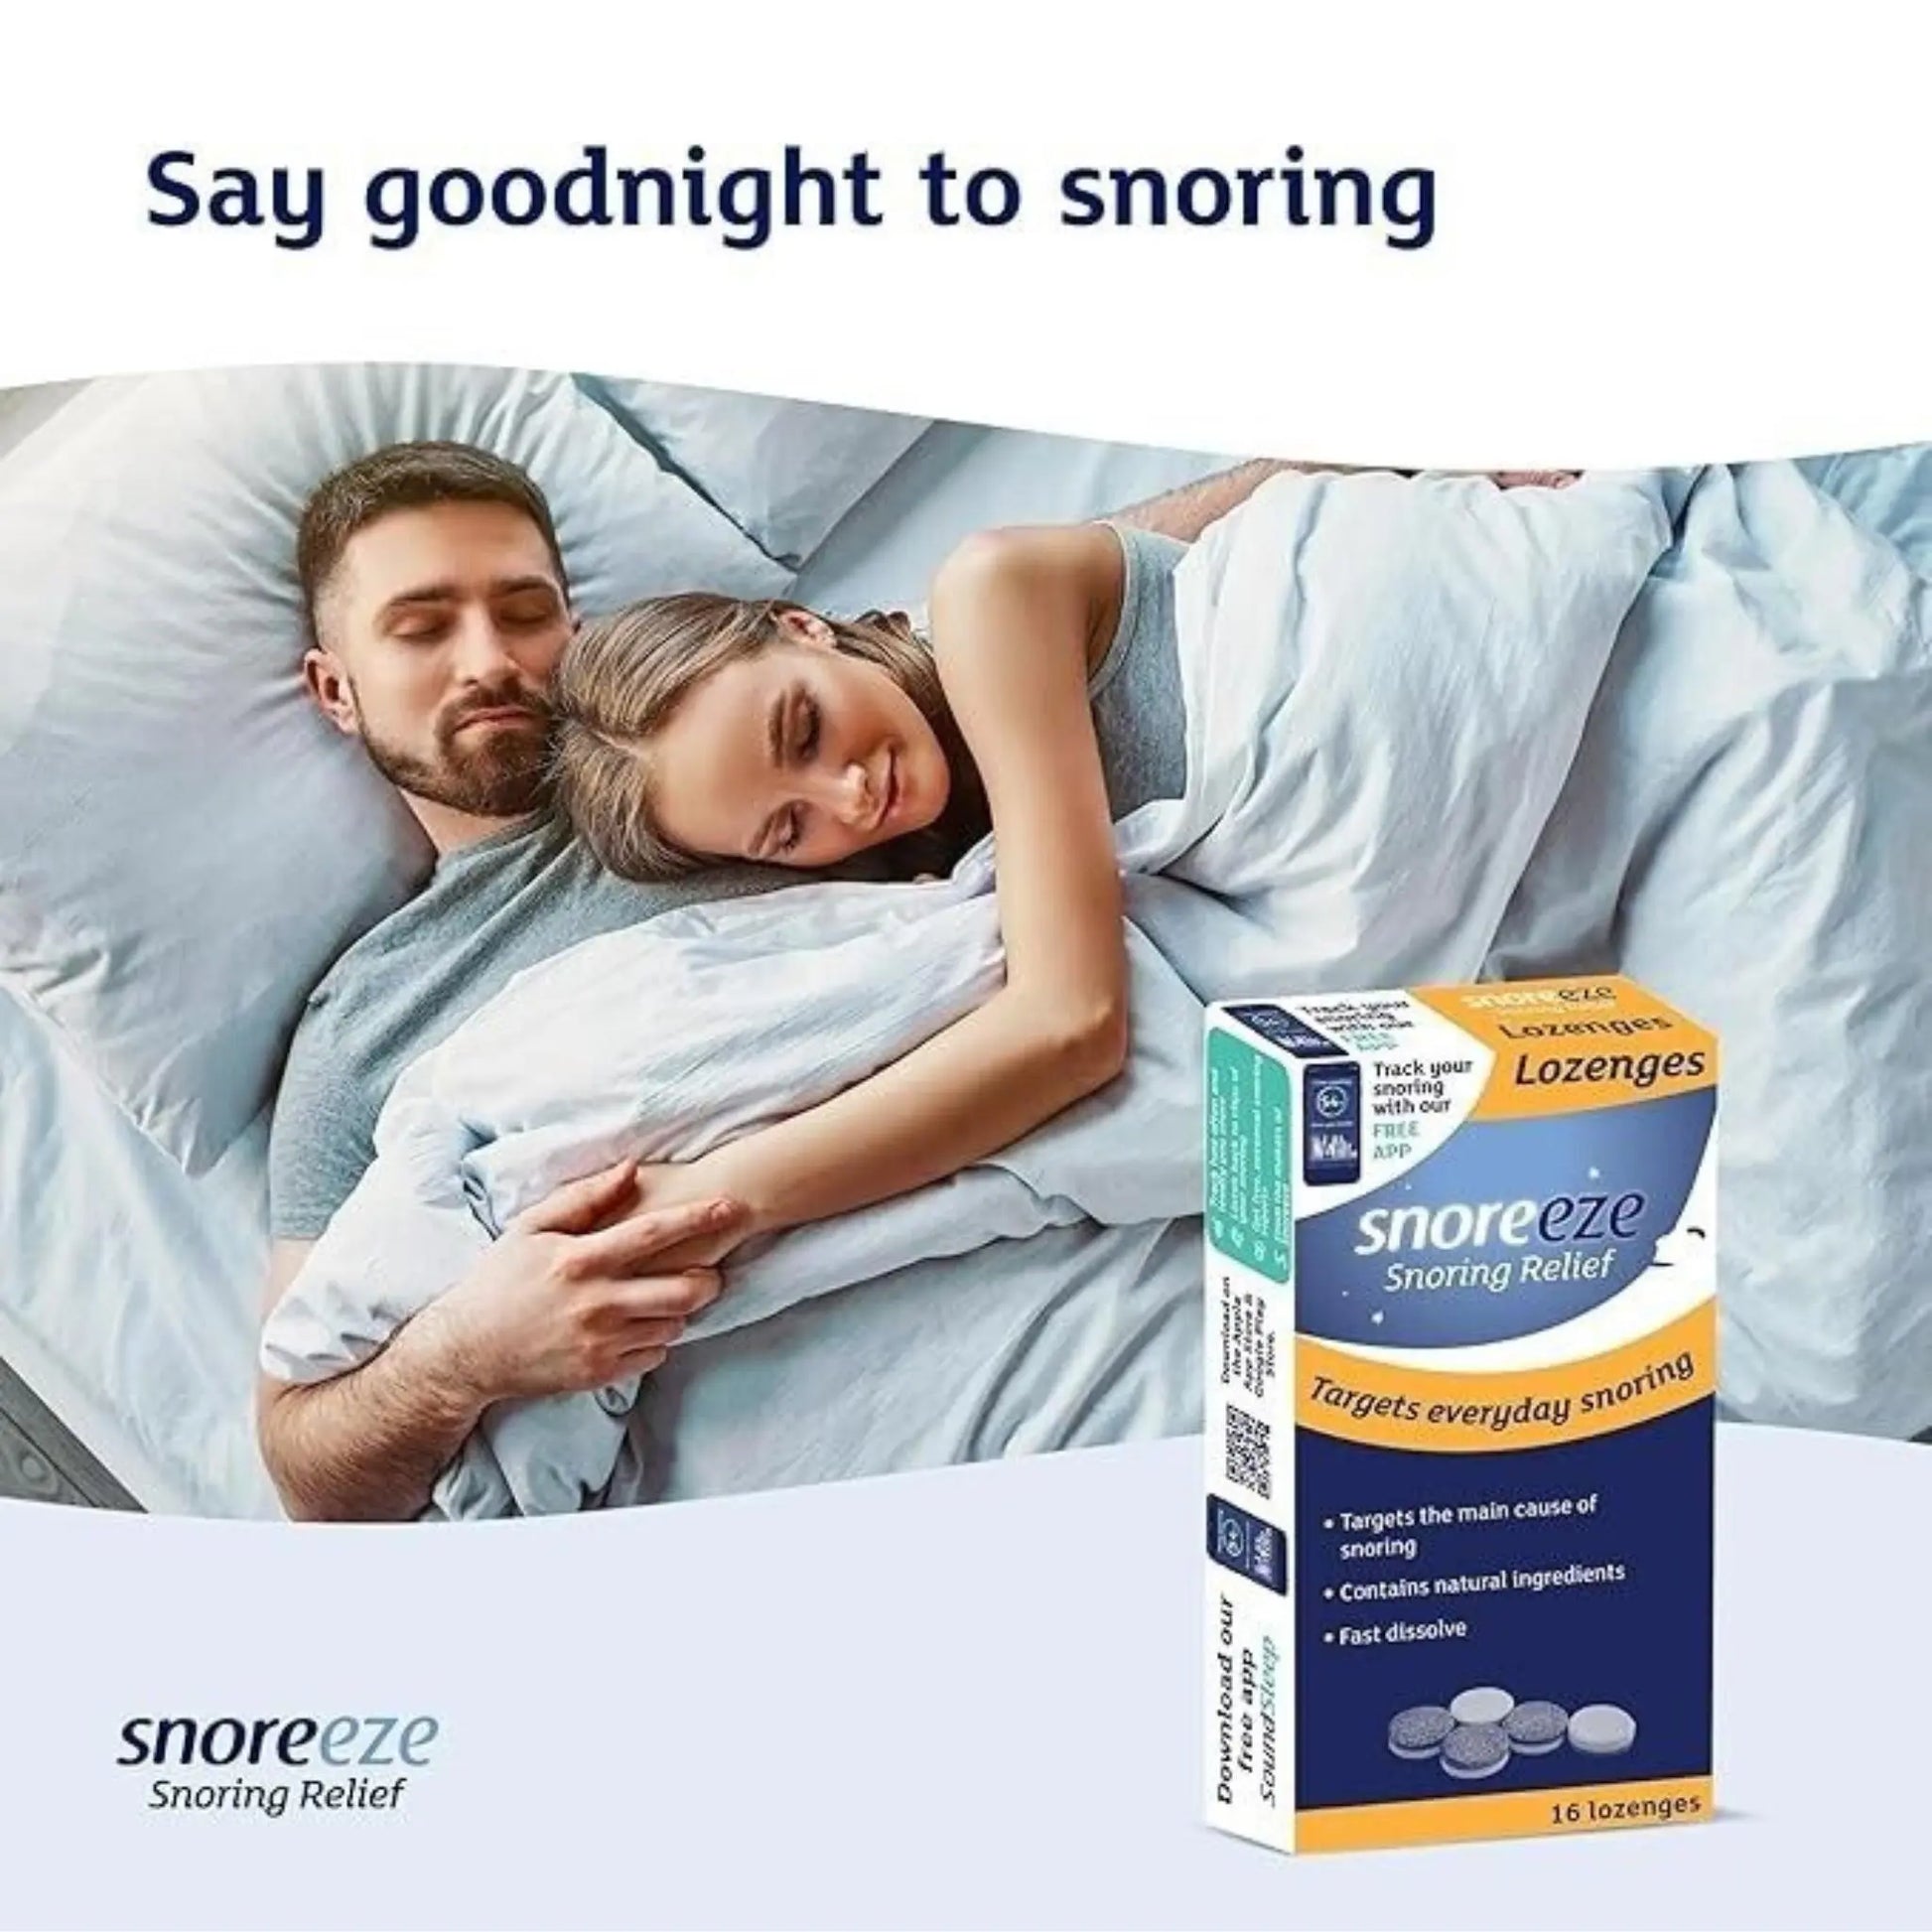 Snoreeze Lozenges - 16 lozenges- helps relief from snoring Snoreeze